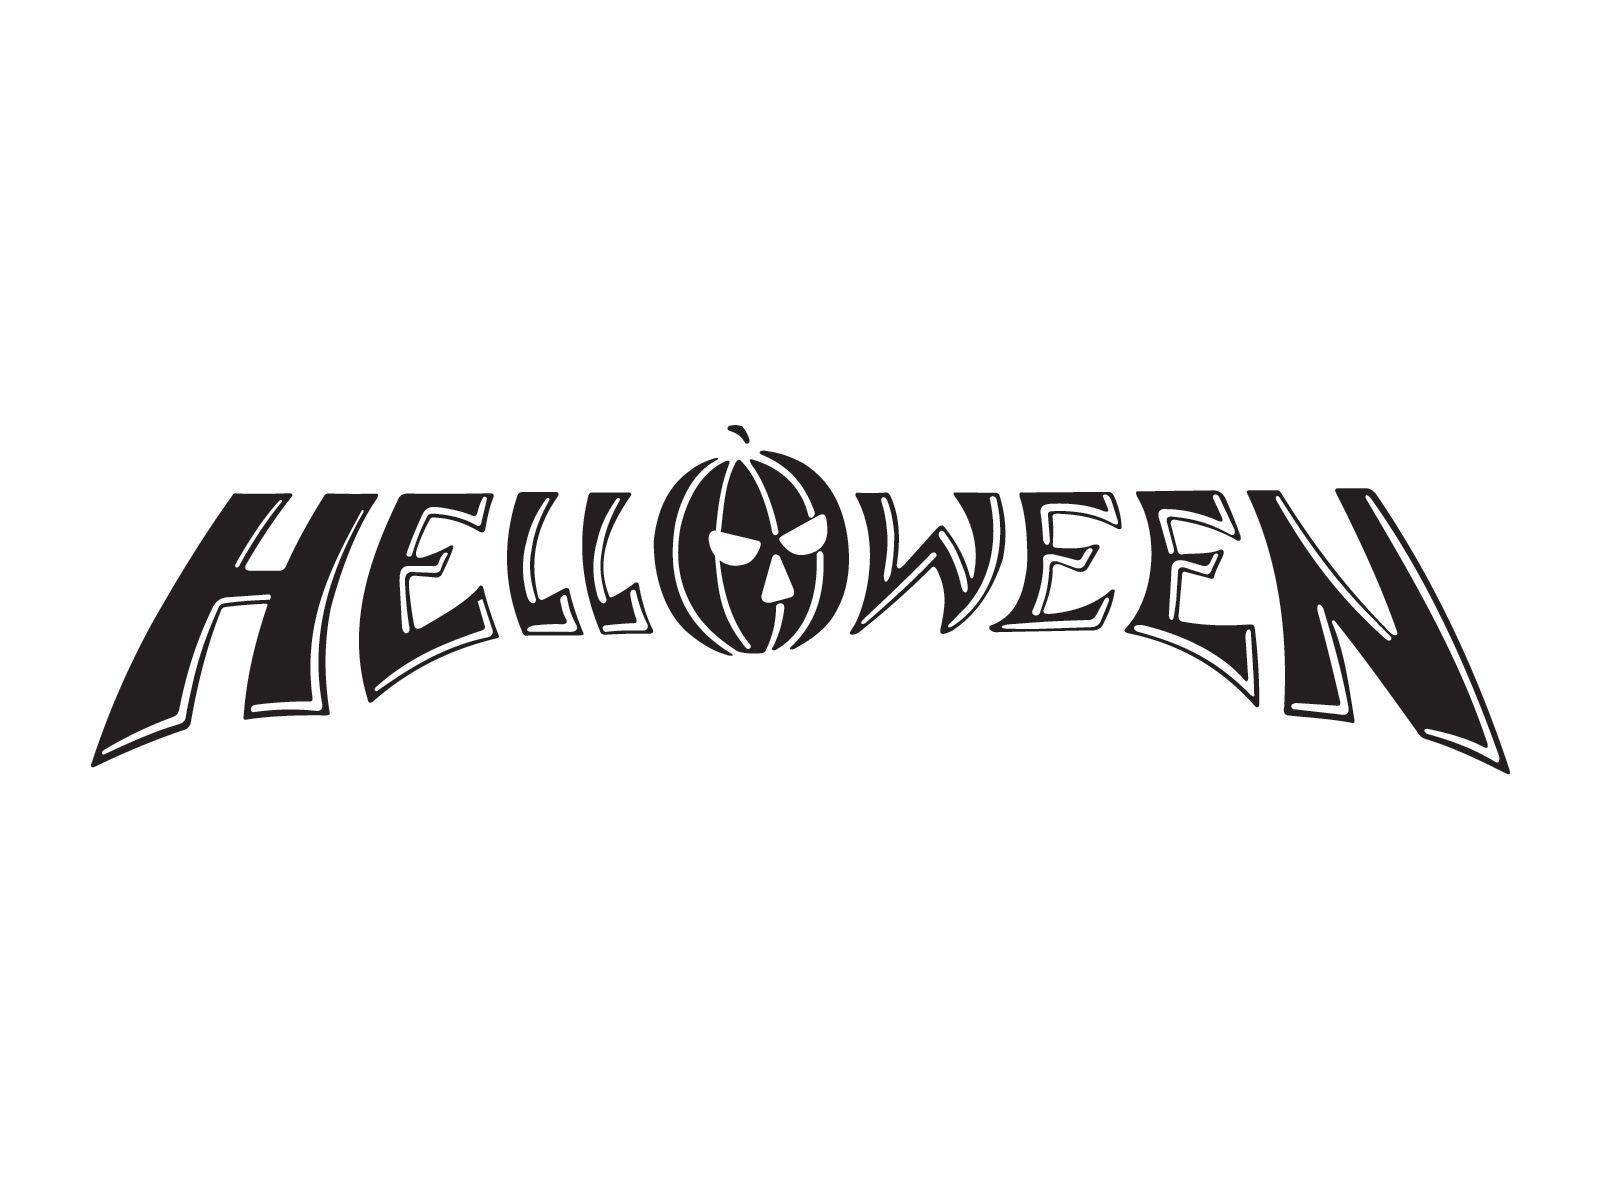 Helloween Logo - Helloween logo wallpaper | Band logos | Pinterest | Band logos ...